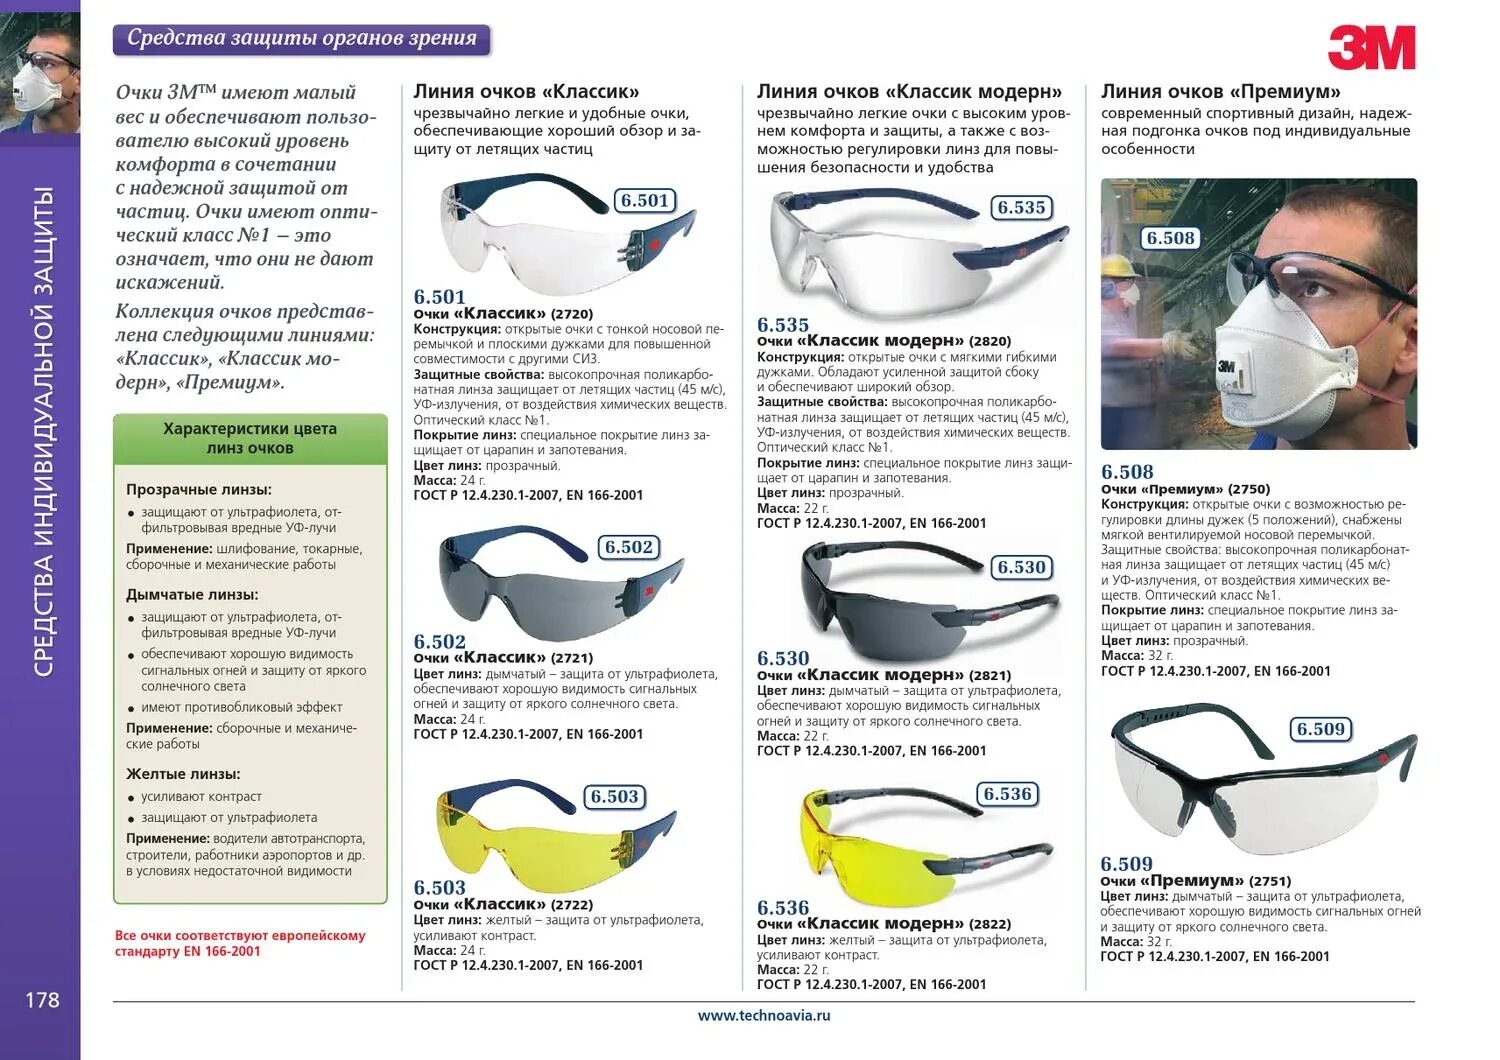 Класс защиты очков защитных. СИЗ очки защитные ГОСТ. Очки защитные открытые ГОСТ 12.4.253-2013. Защитные очки маркировка. Средства индивидуальной защиты органов зрения.